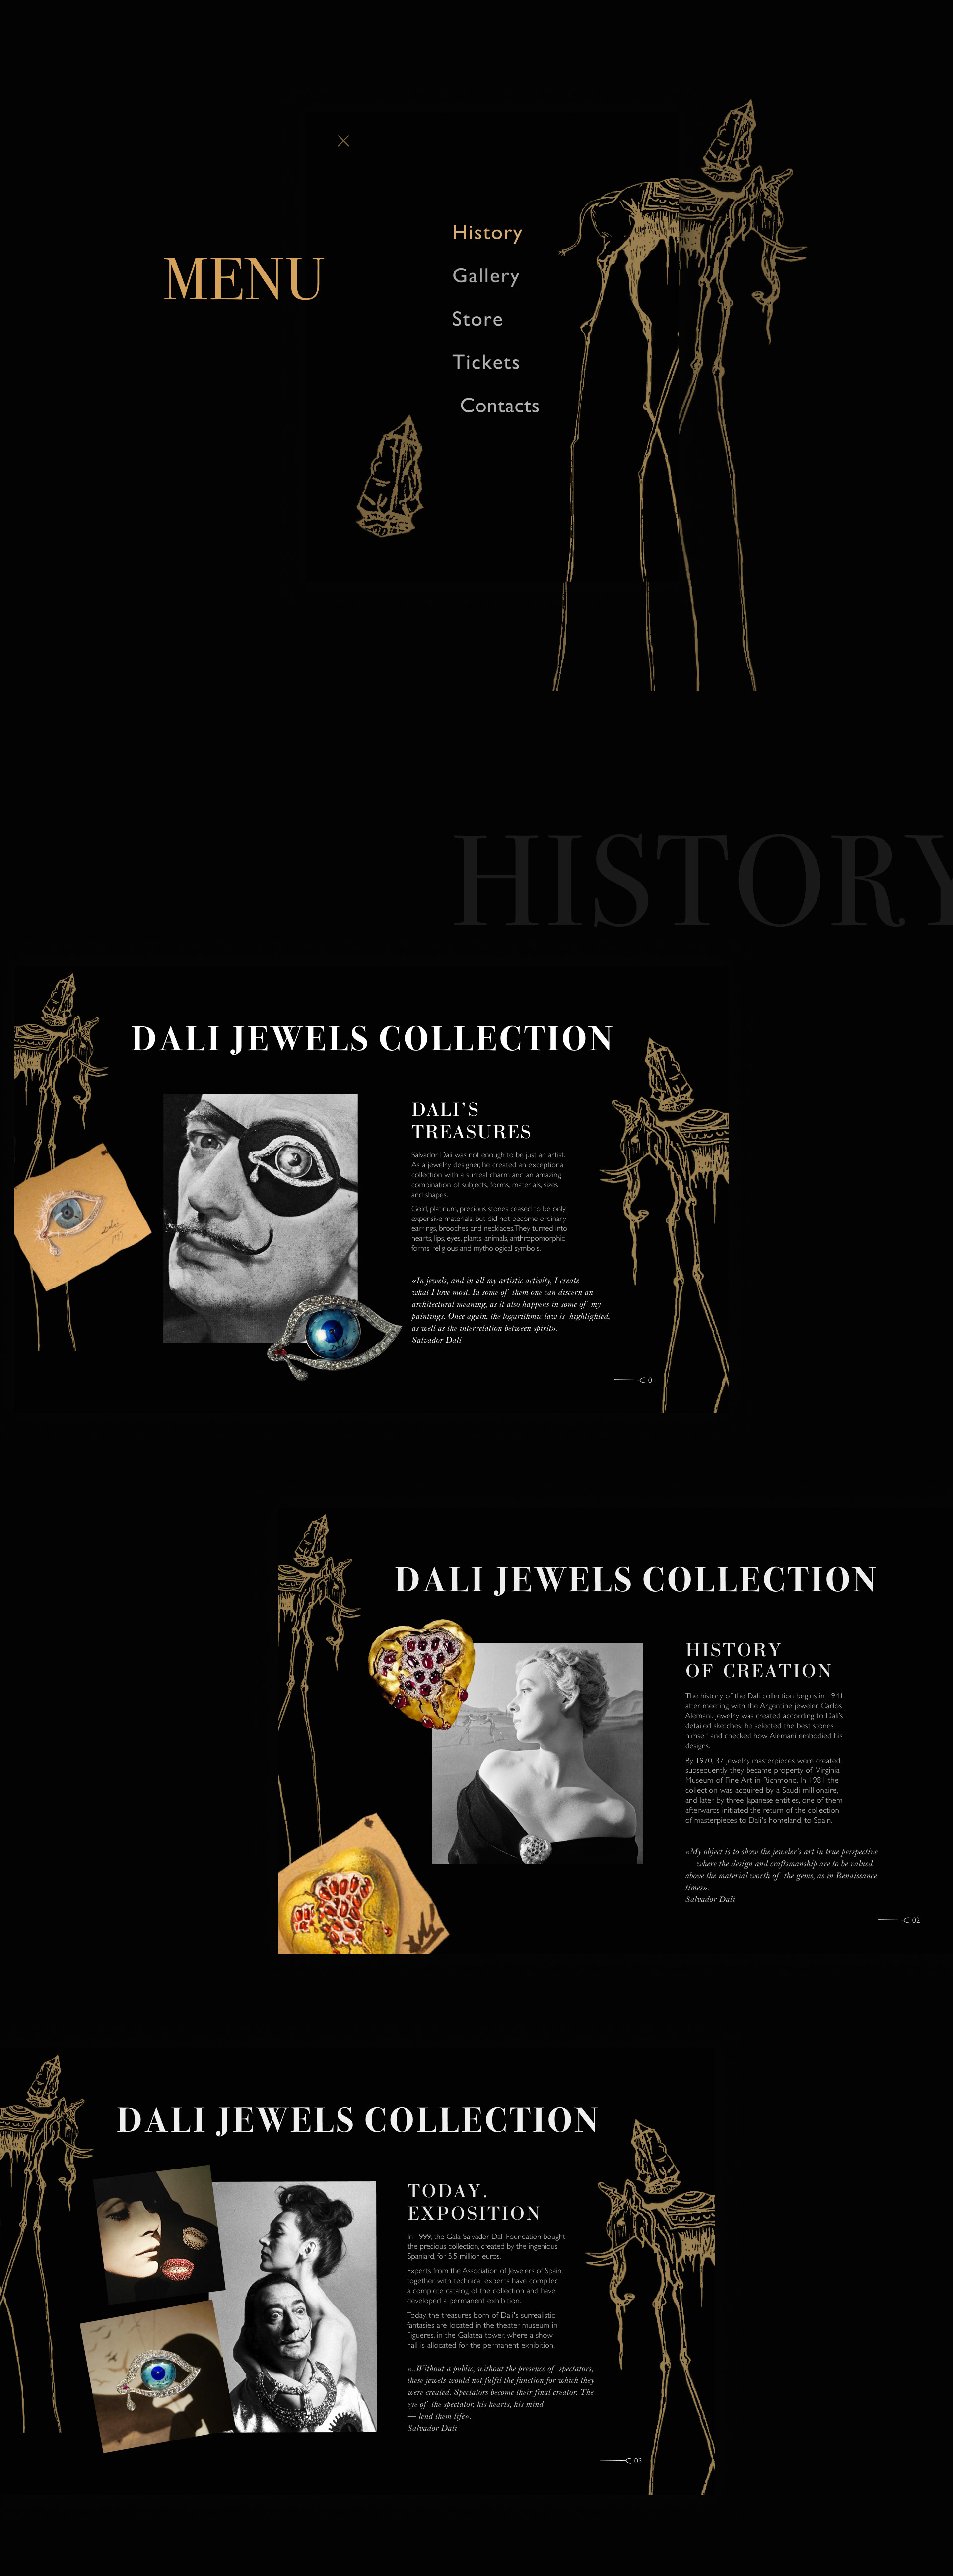 大理珠宝博物馆网站设计4.jpg